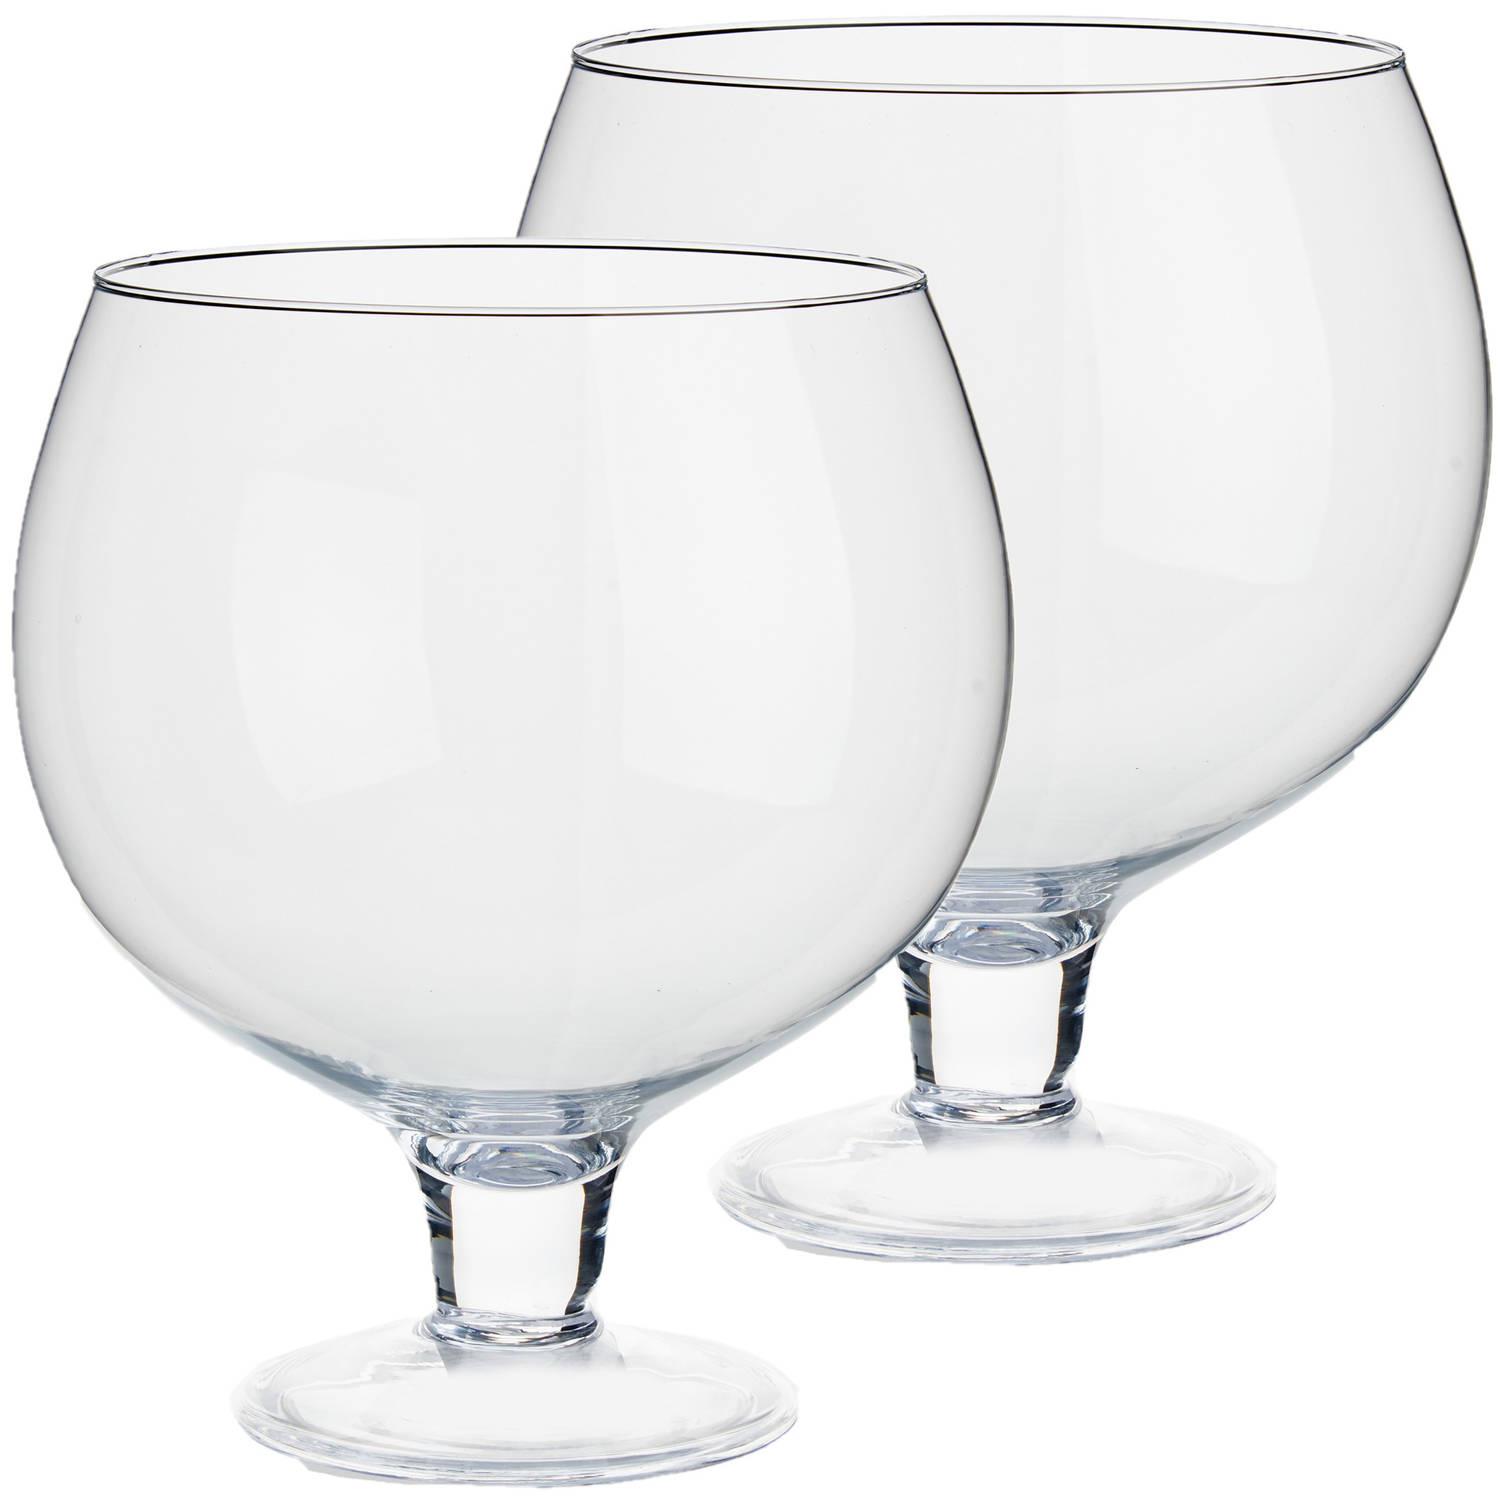 Stamboom vliegtuig merk Glazen wijnglas/decoratie vaas 25 x 29 cm - Vazen | Blokker